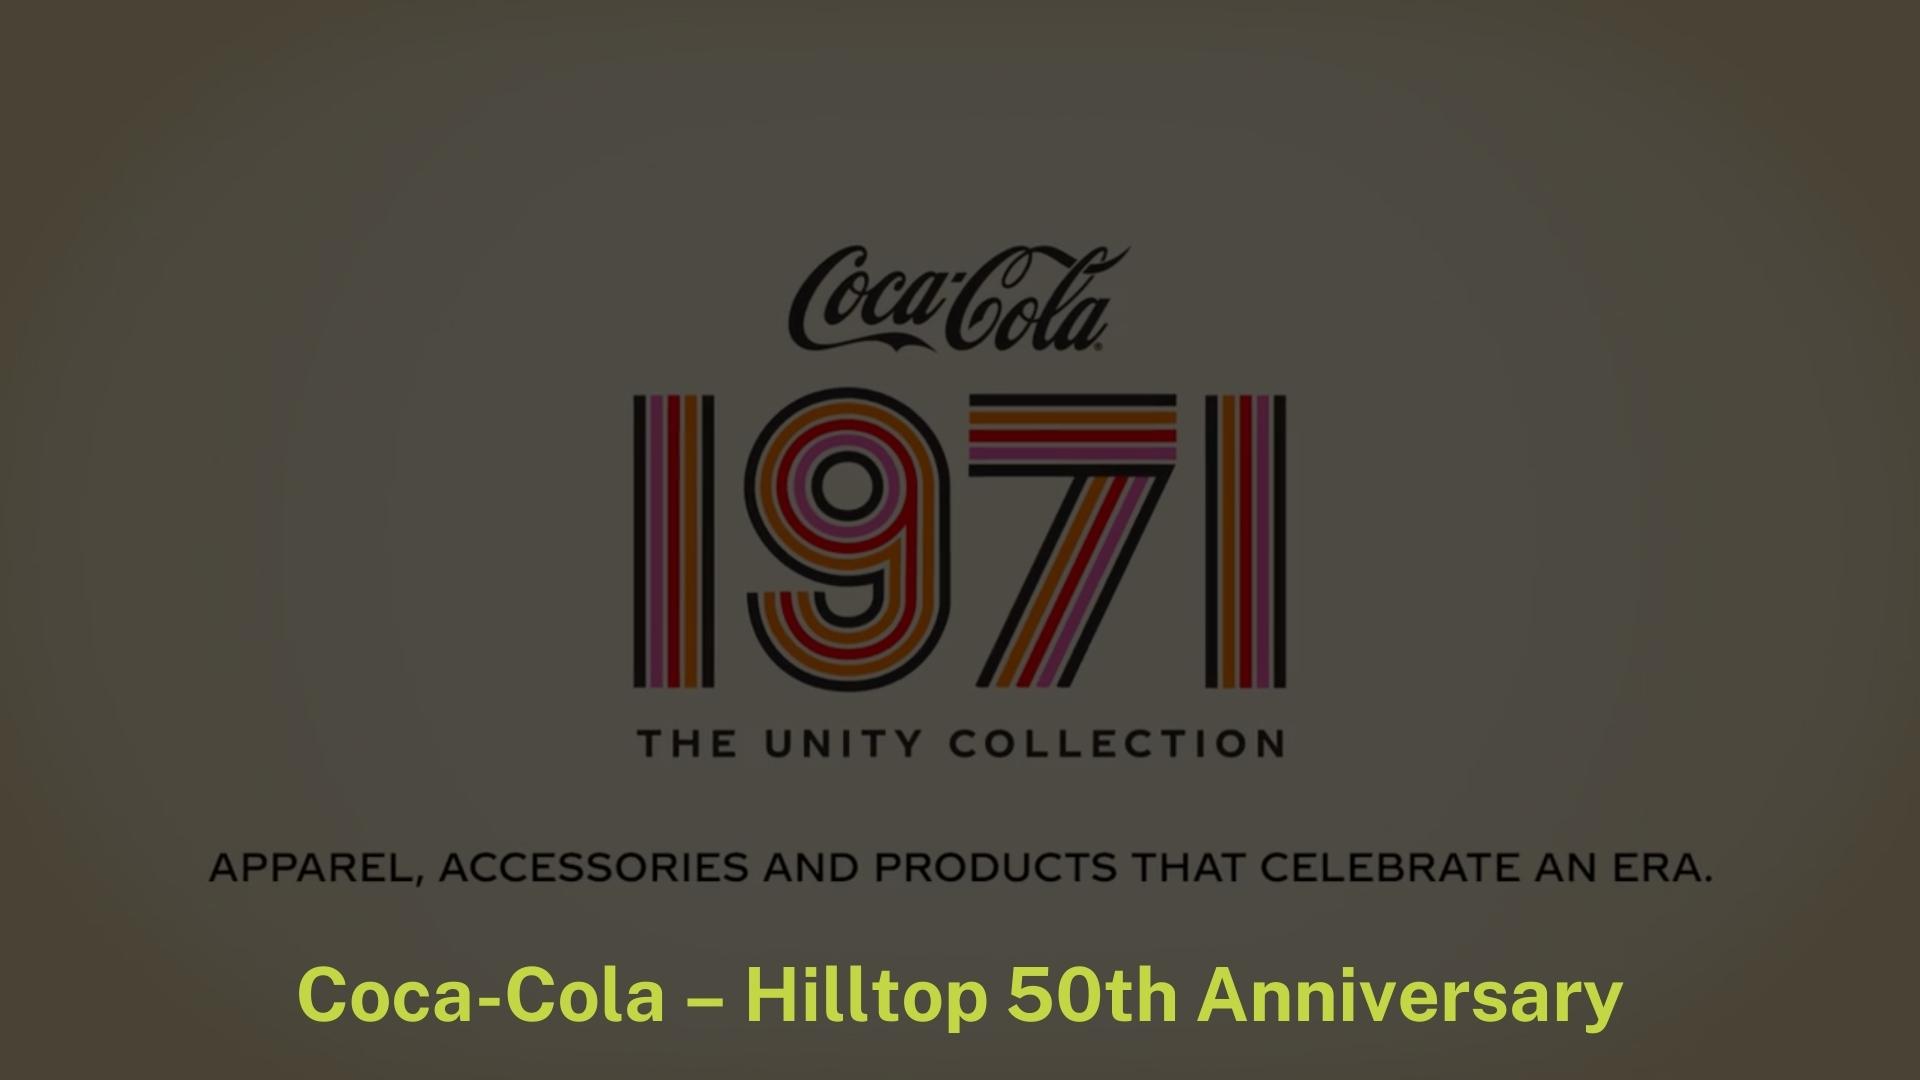 Coca-Cola - Hilltop 50th Anniversary